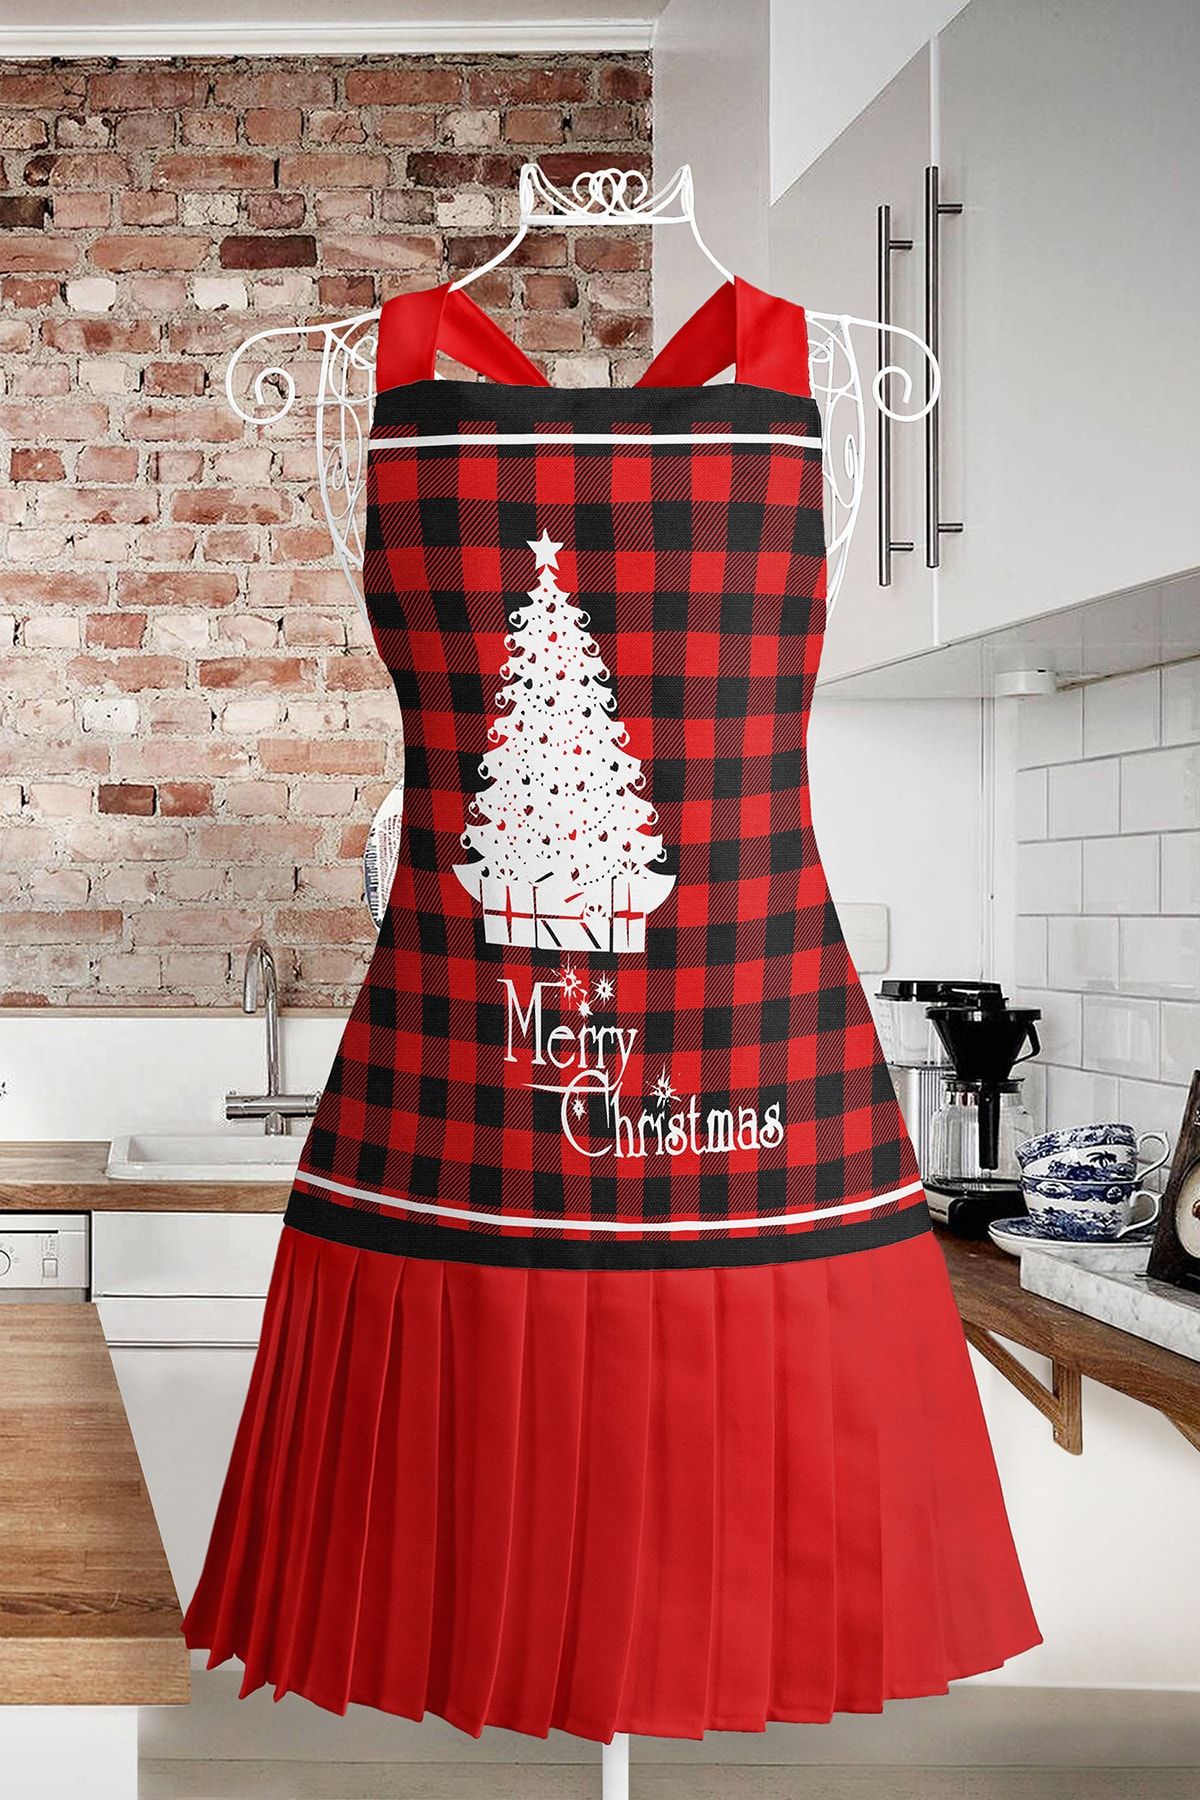 Realhomes Çam Ağacı Desenli Mutfak Önlüğü - Özel Tasarım Merry Christmas Yazılı Askılı Aşçı Leke Tutmaz Önlük